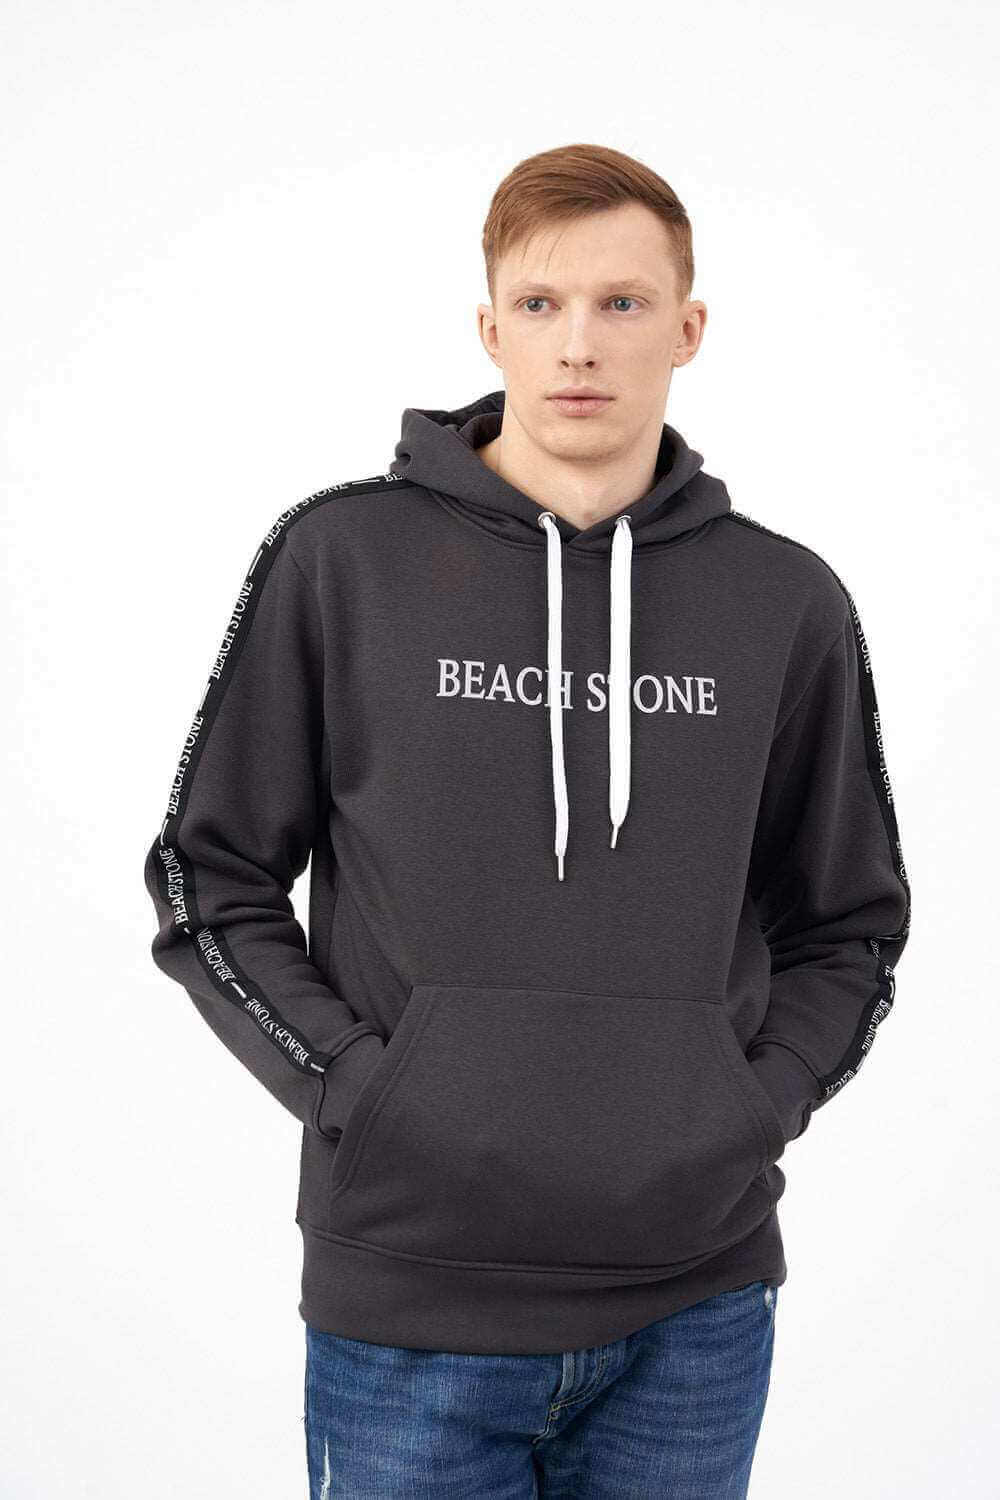 Mens Hoodies  Trendy Zip-Up Hoodies and Sweatshirts – Beach Stone